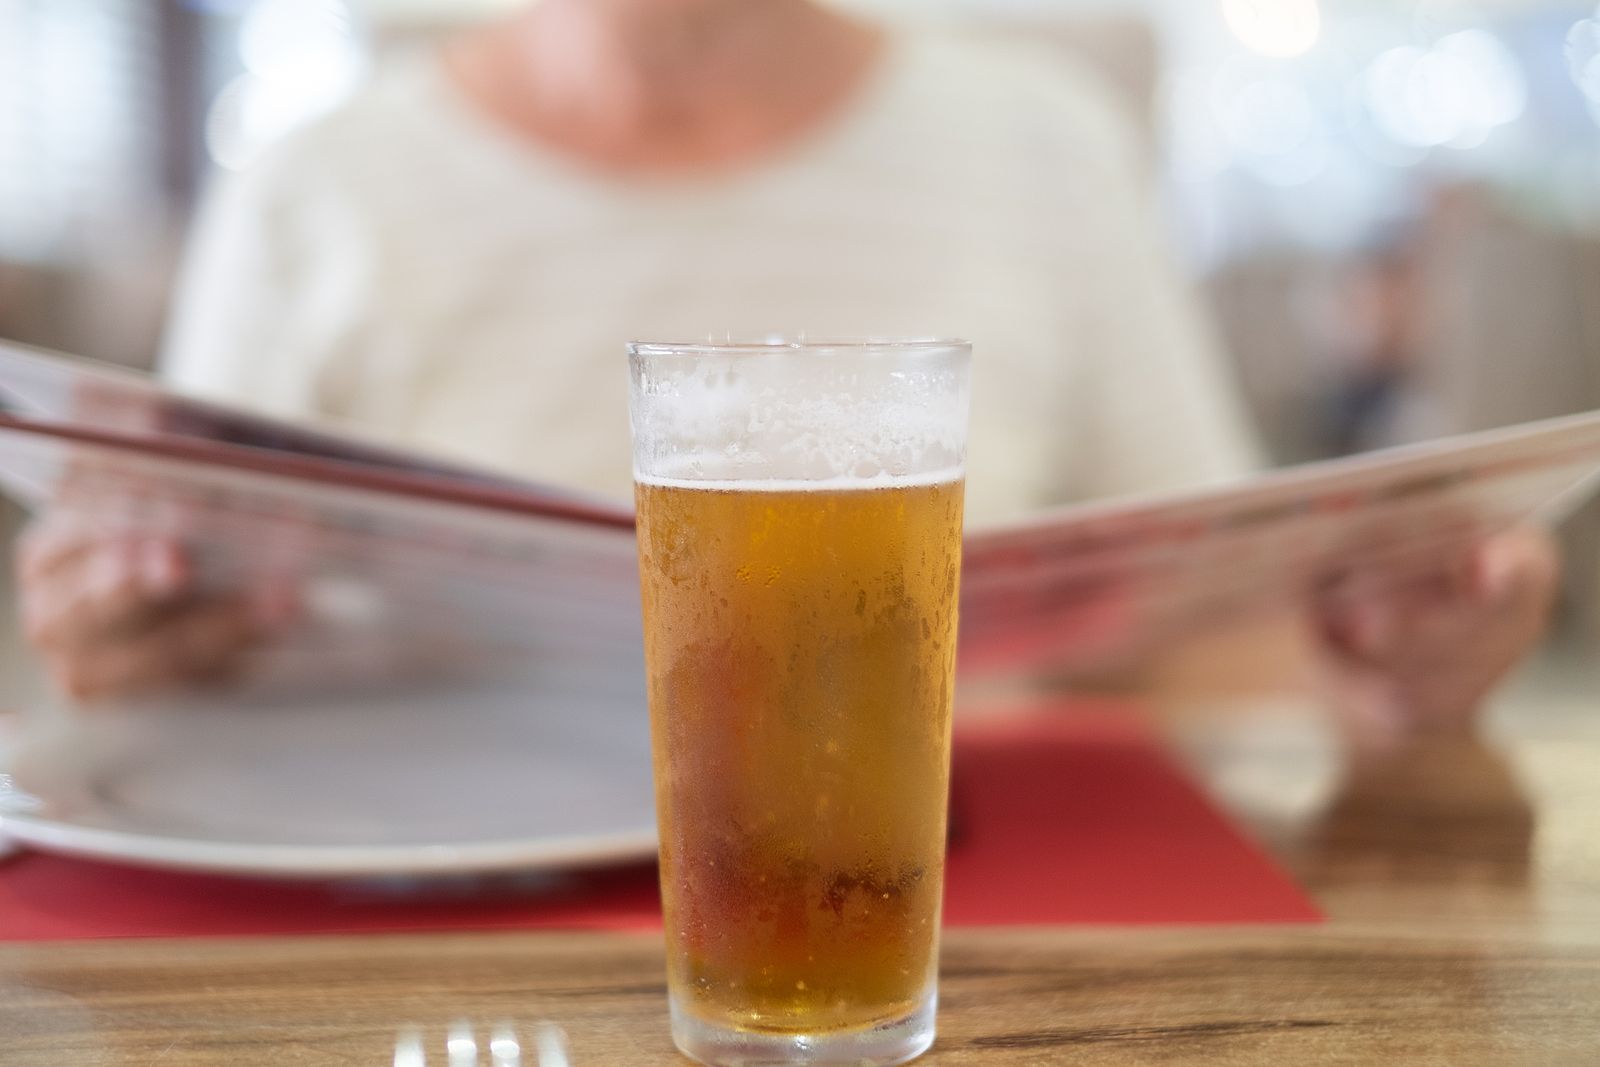 La OCU denuncia a cervezas Damm por publicidad engañosa